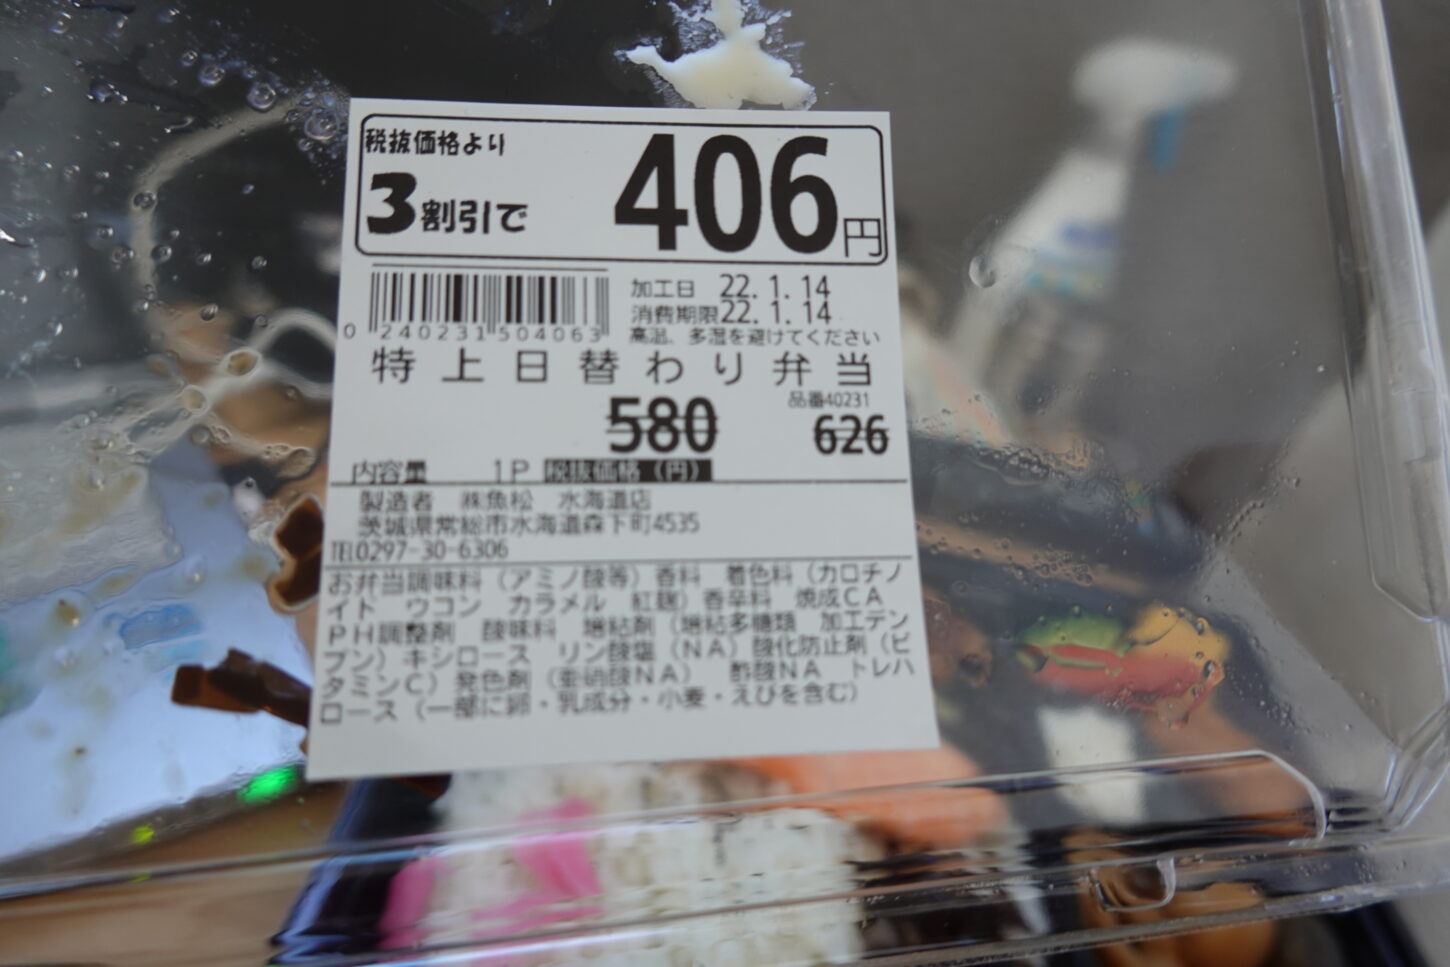 昭和でレトロな撮影専用のアパートスタジオ近所のスーパーうおまつの弁当・ロケ弁・激安